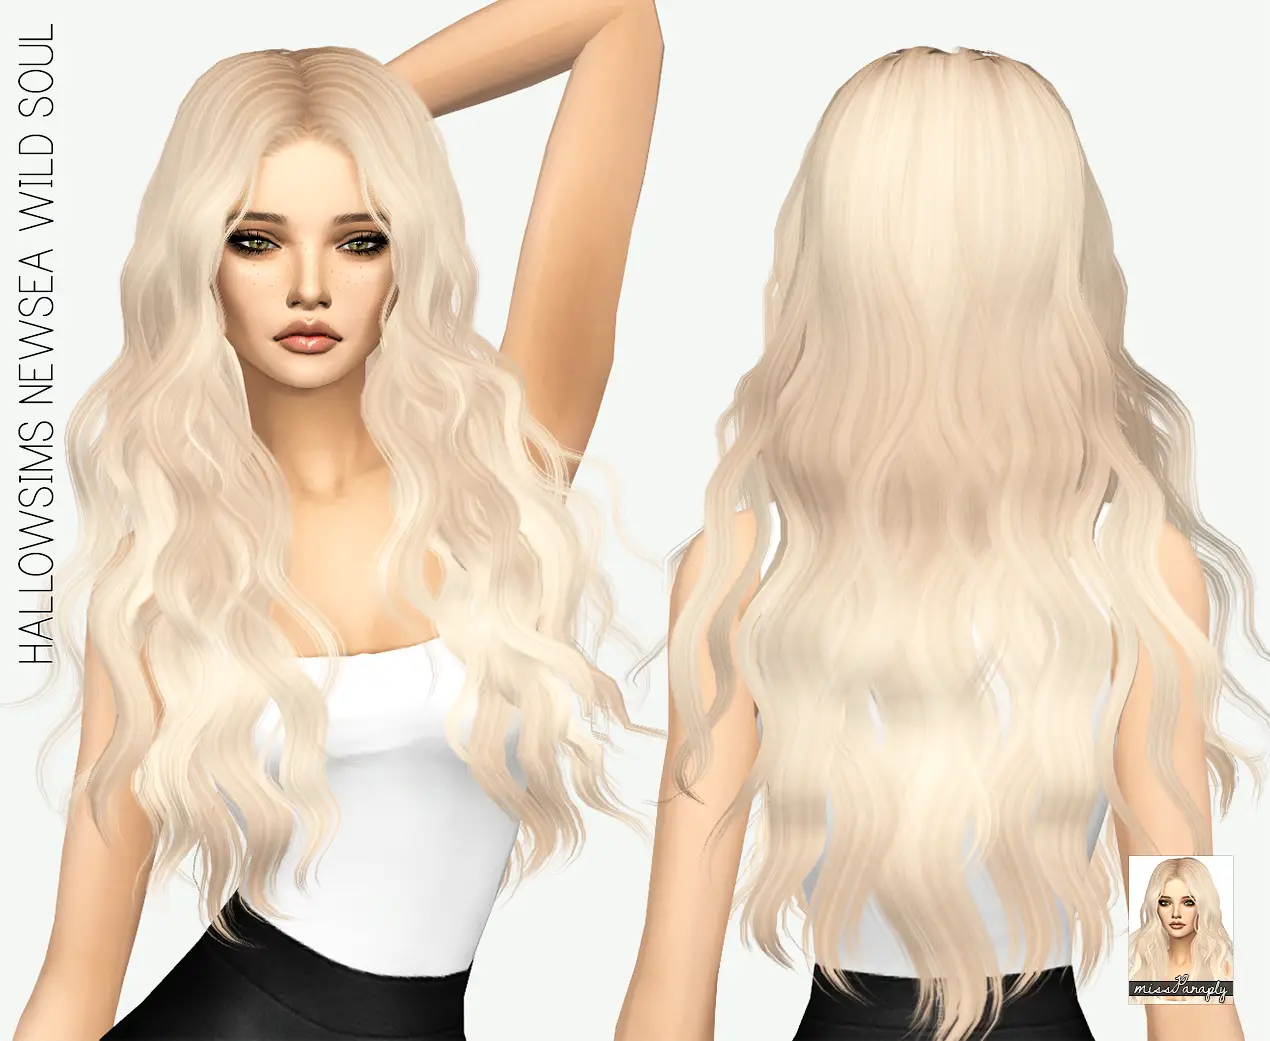 Sims 4 Long Blue Hair CC - wide 2